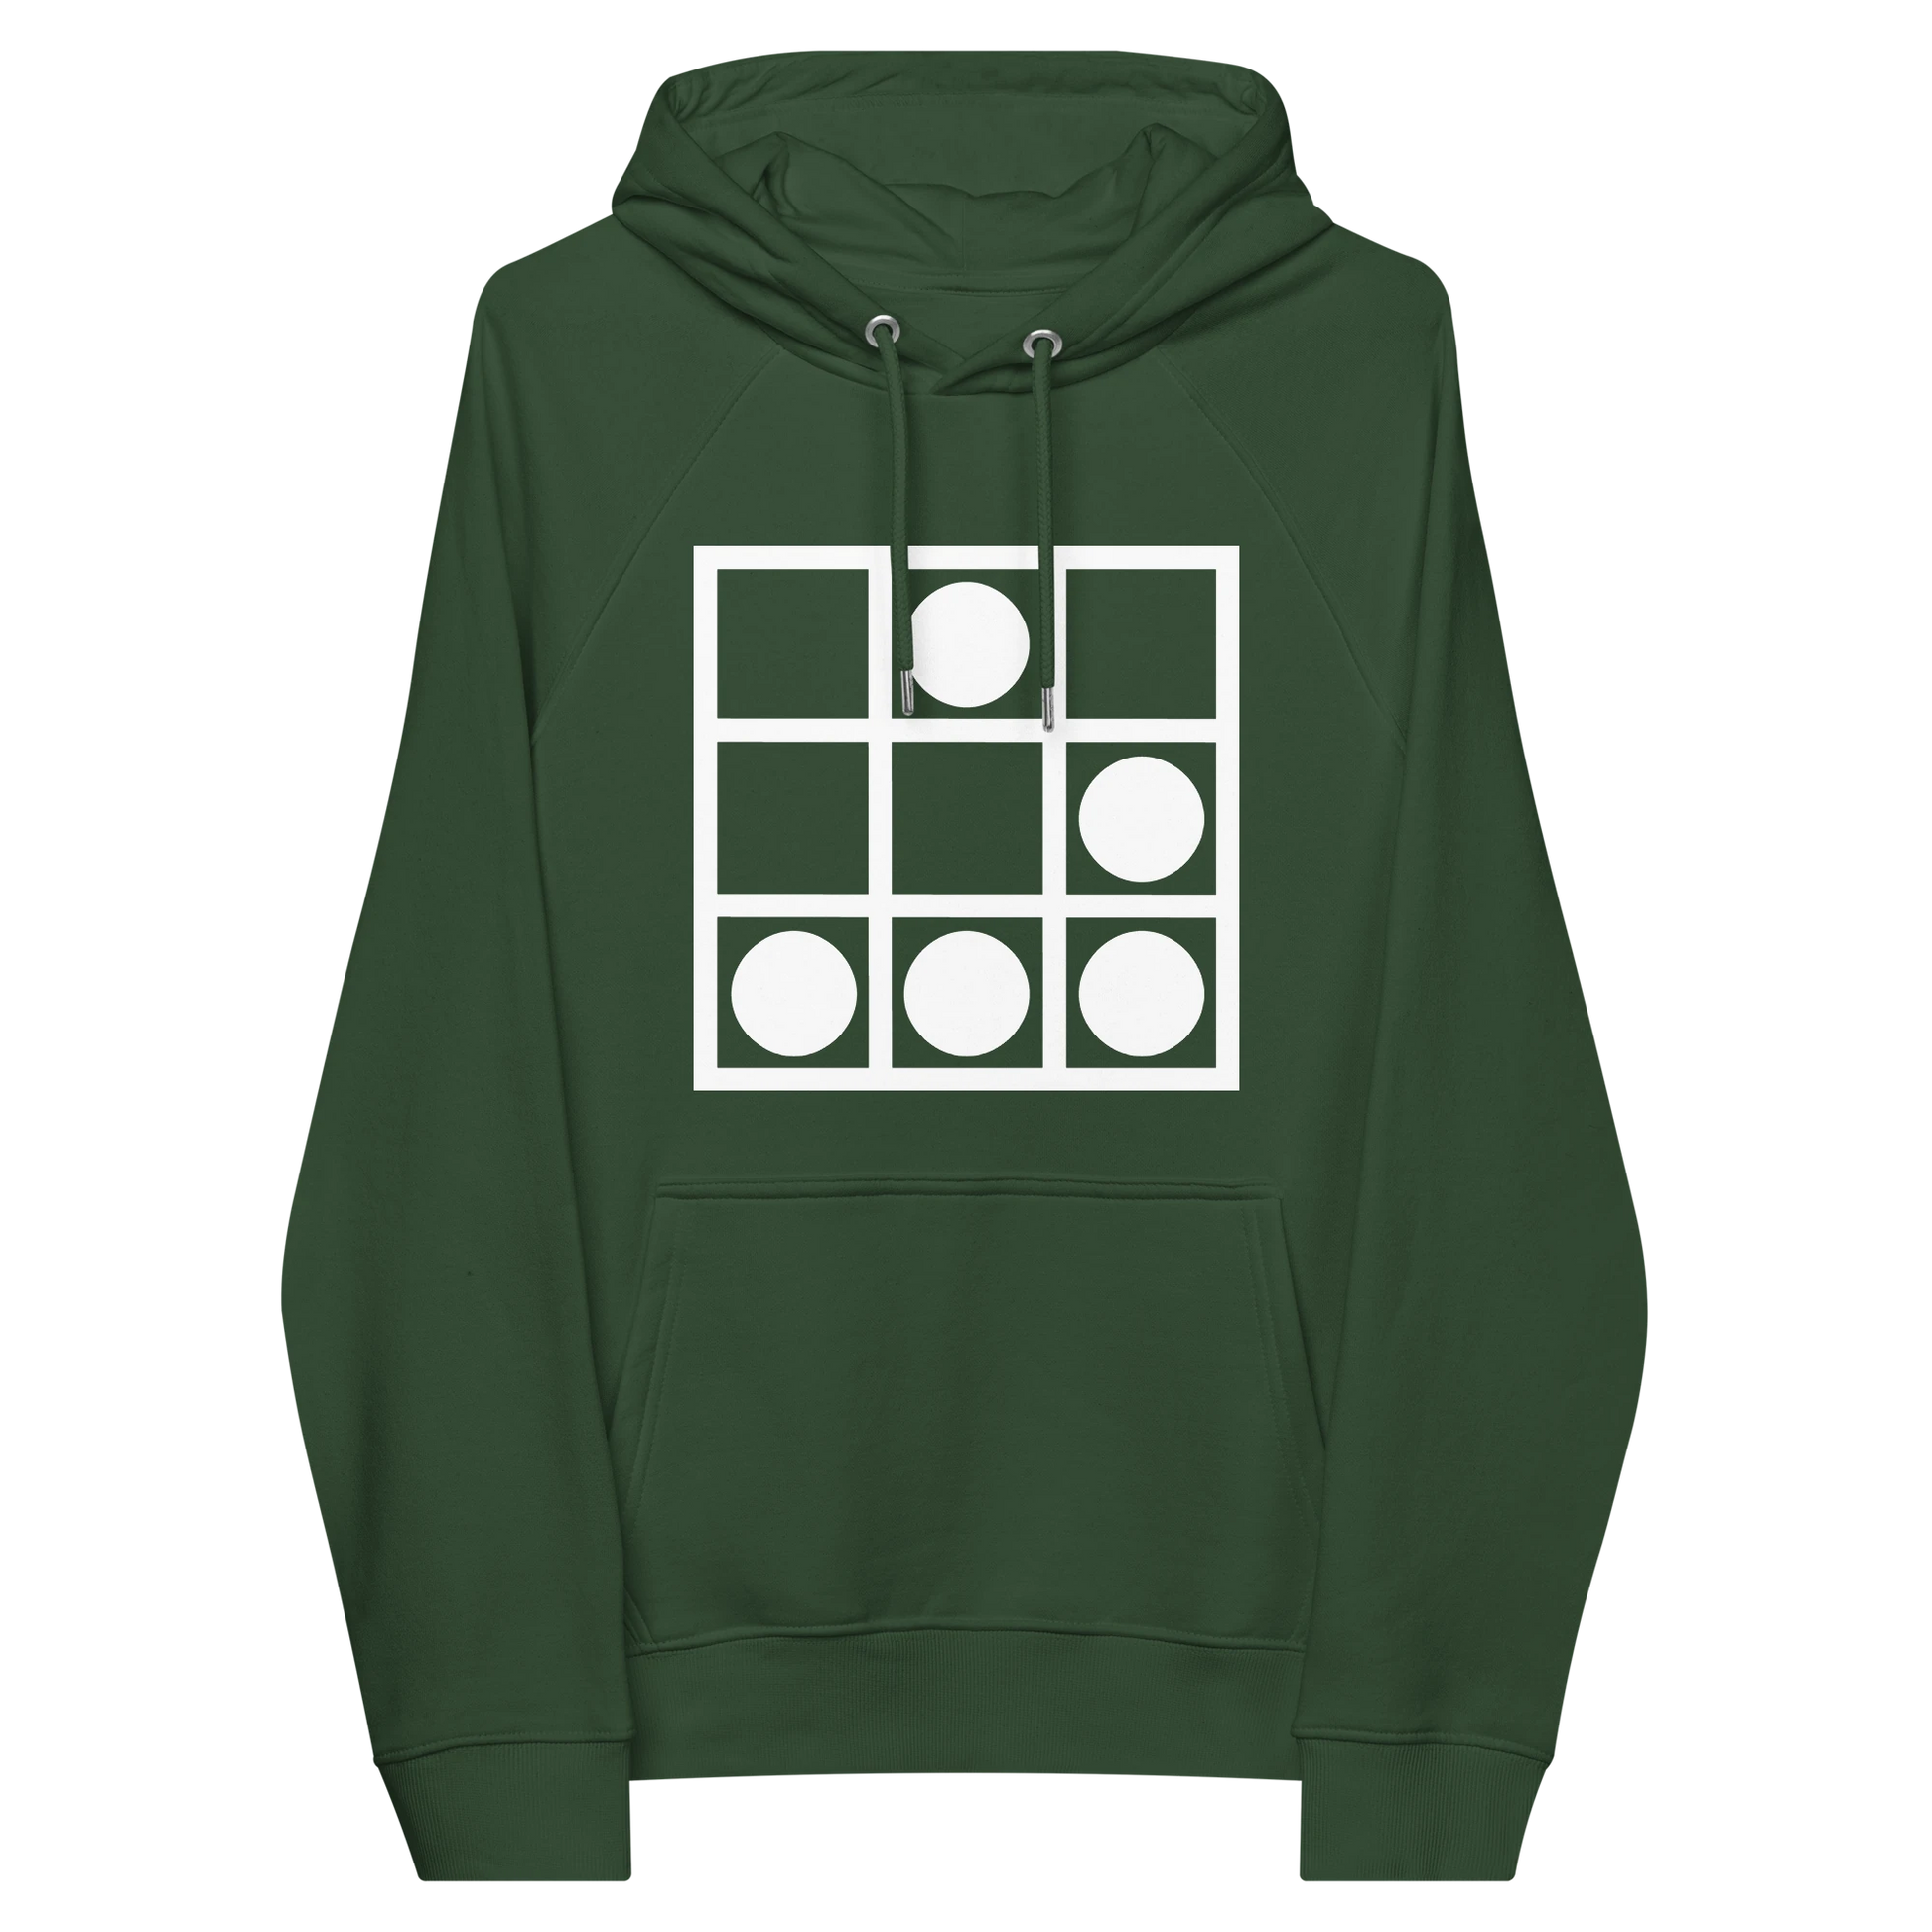 Hacker subculture emblem premium hoodie front flat 2 front